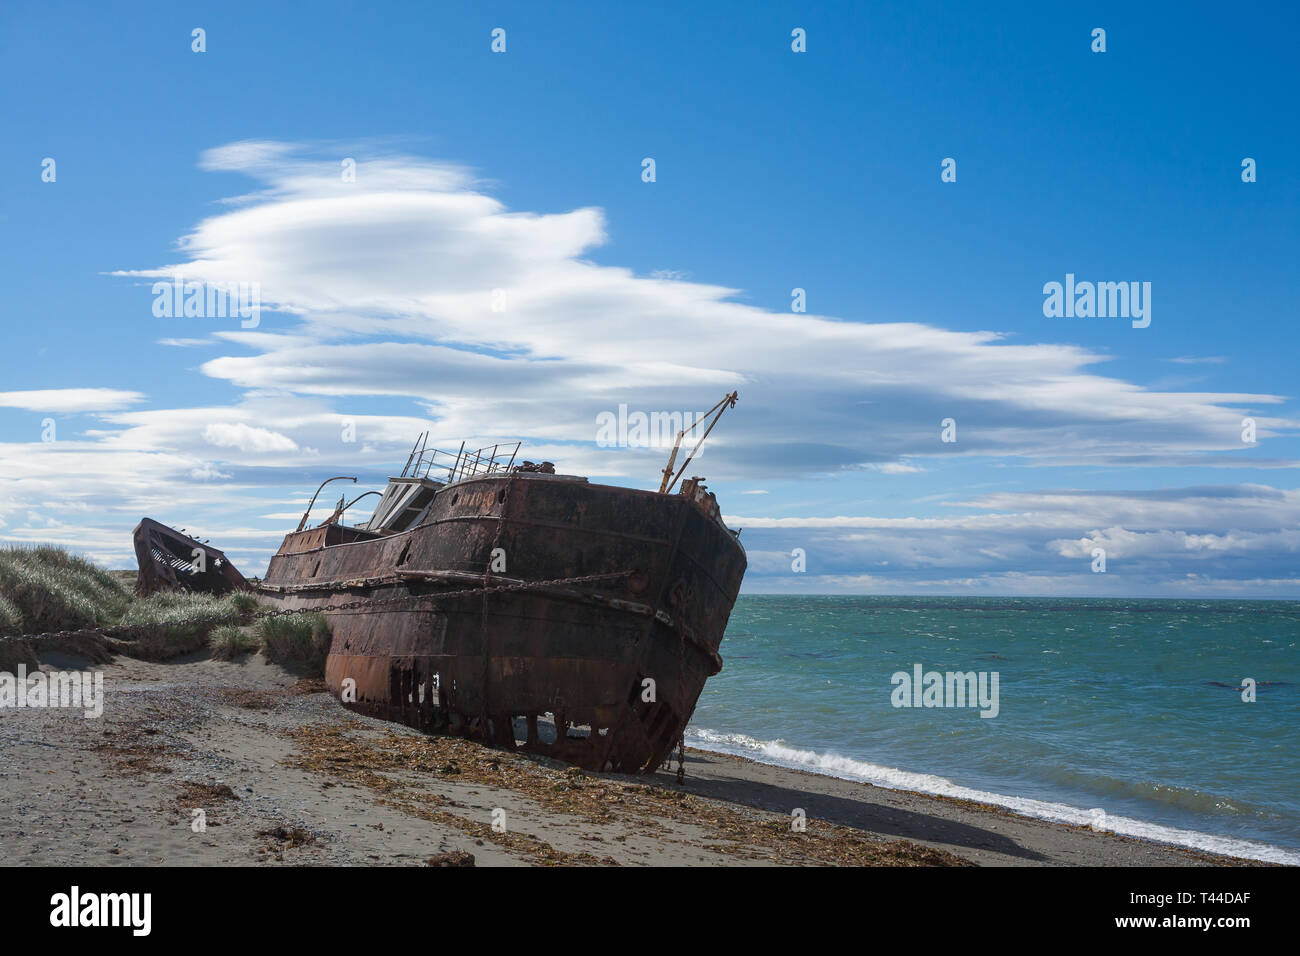 Navi spiaggiate immagini e fotografie stock ad alta risoluzione - Alamy